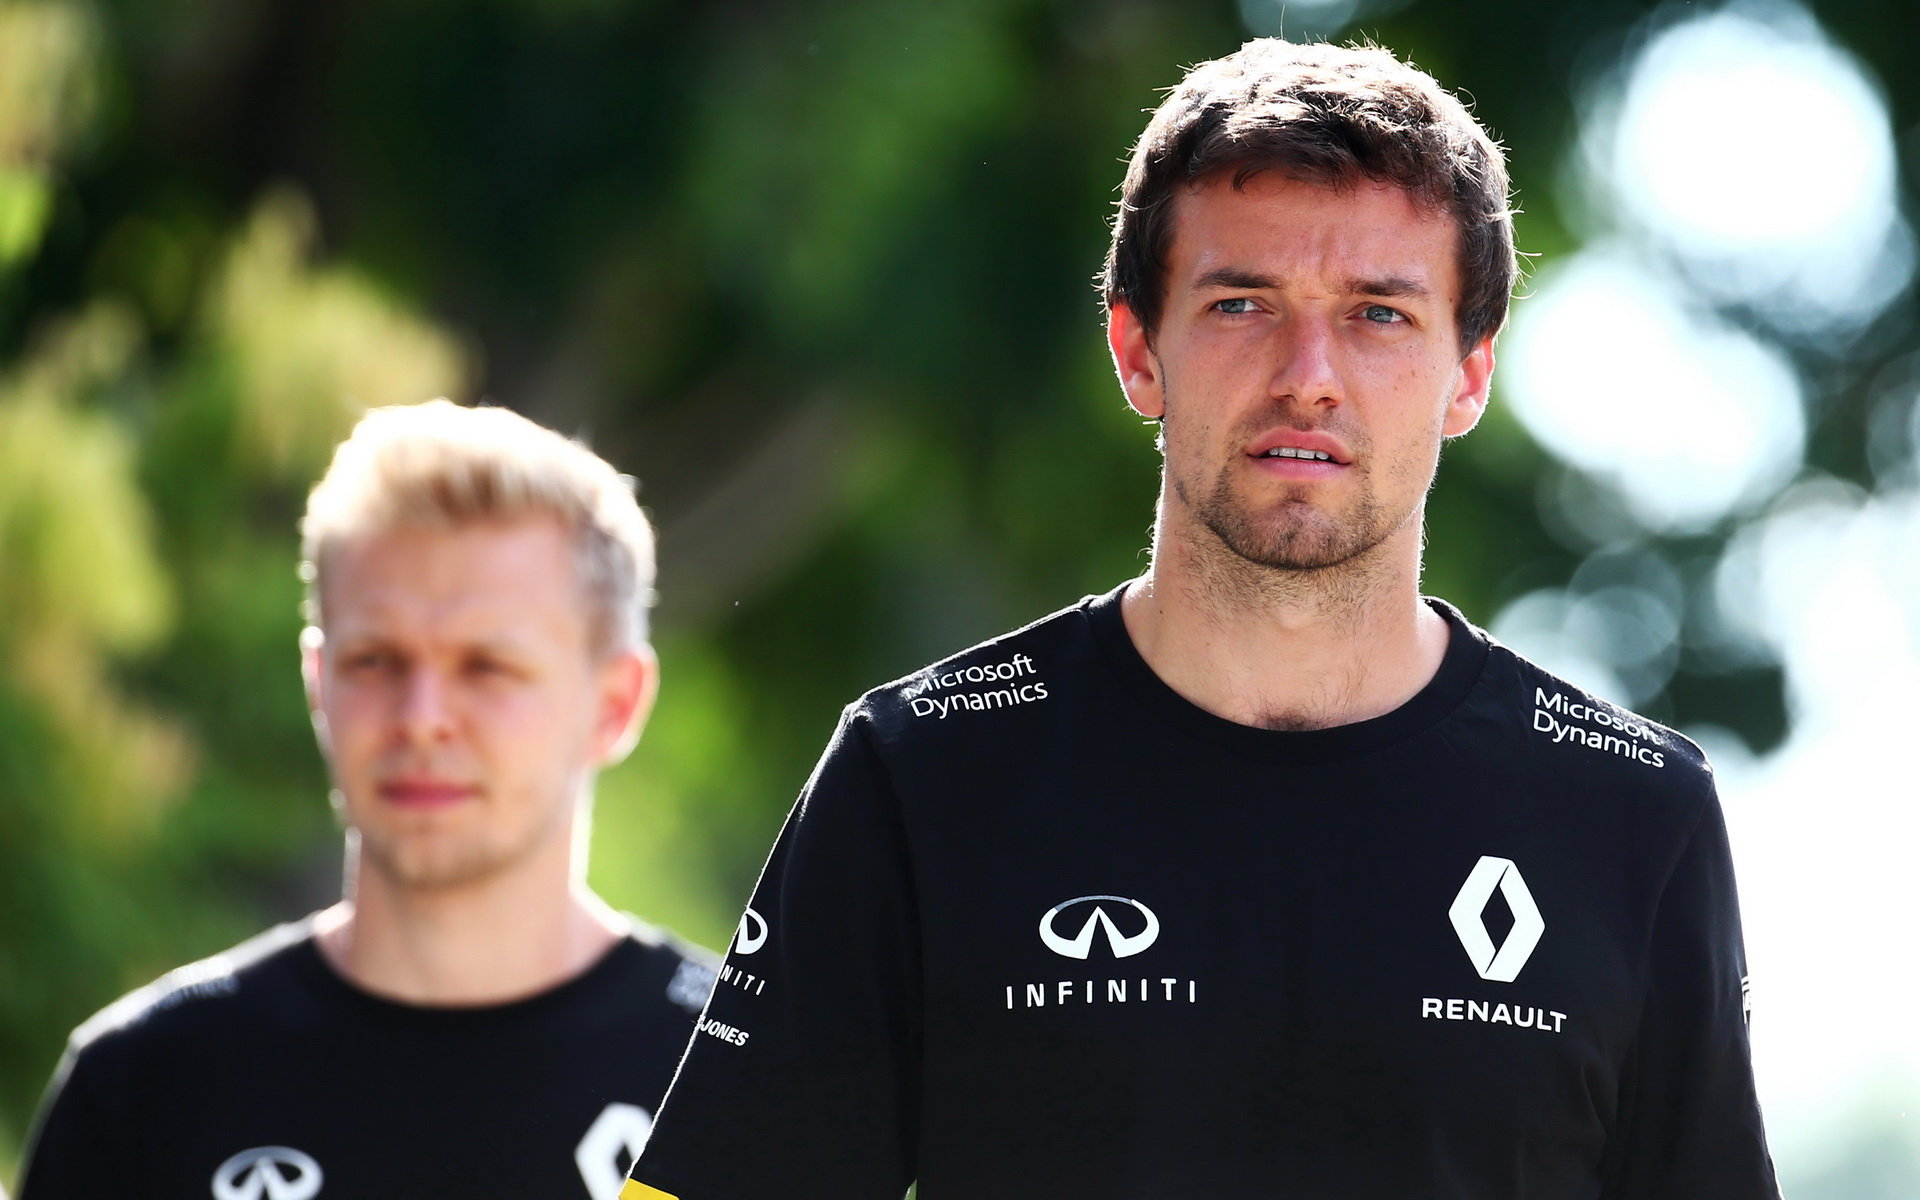 Palmerovi se příliš nezamlouvá přístup Renaultu